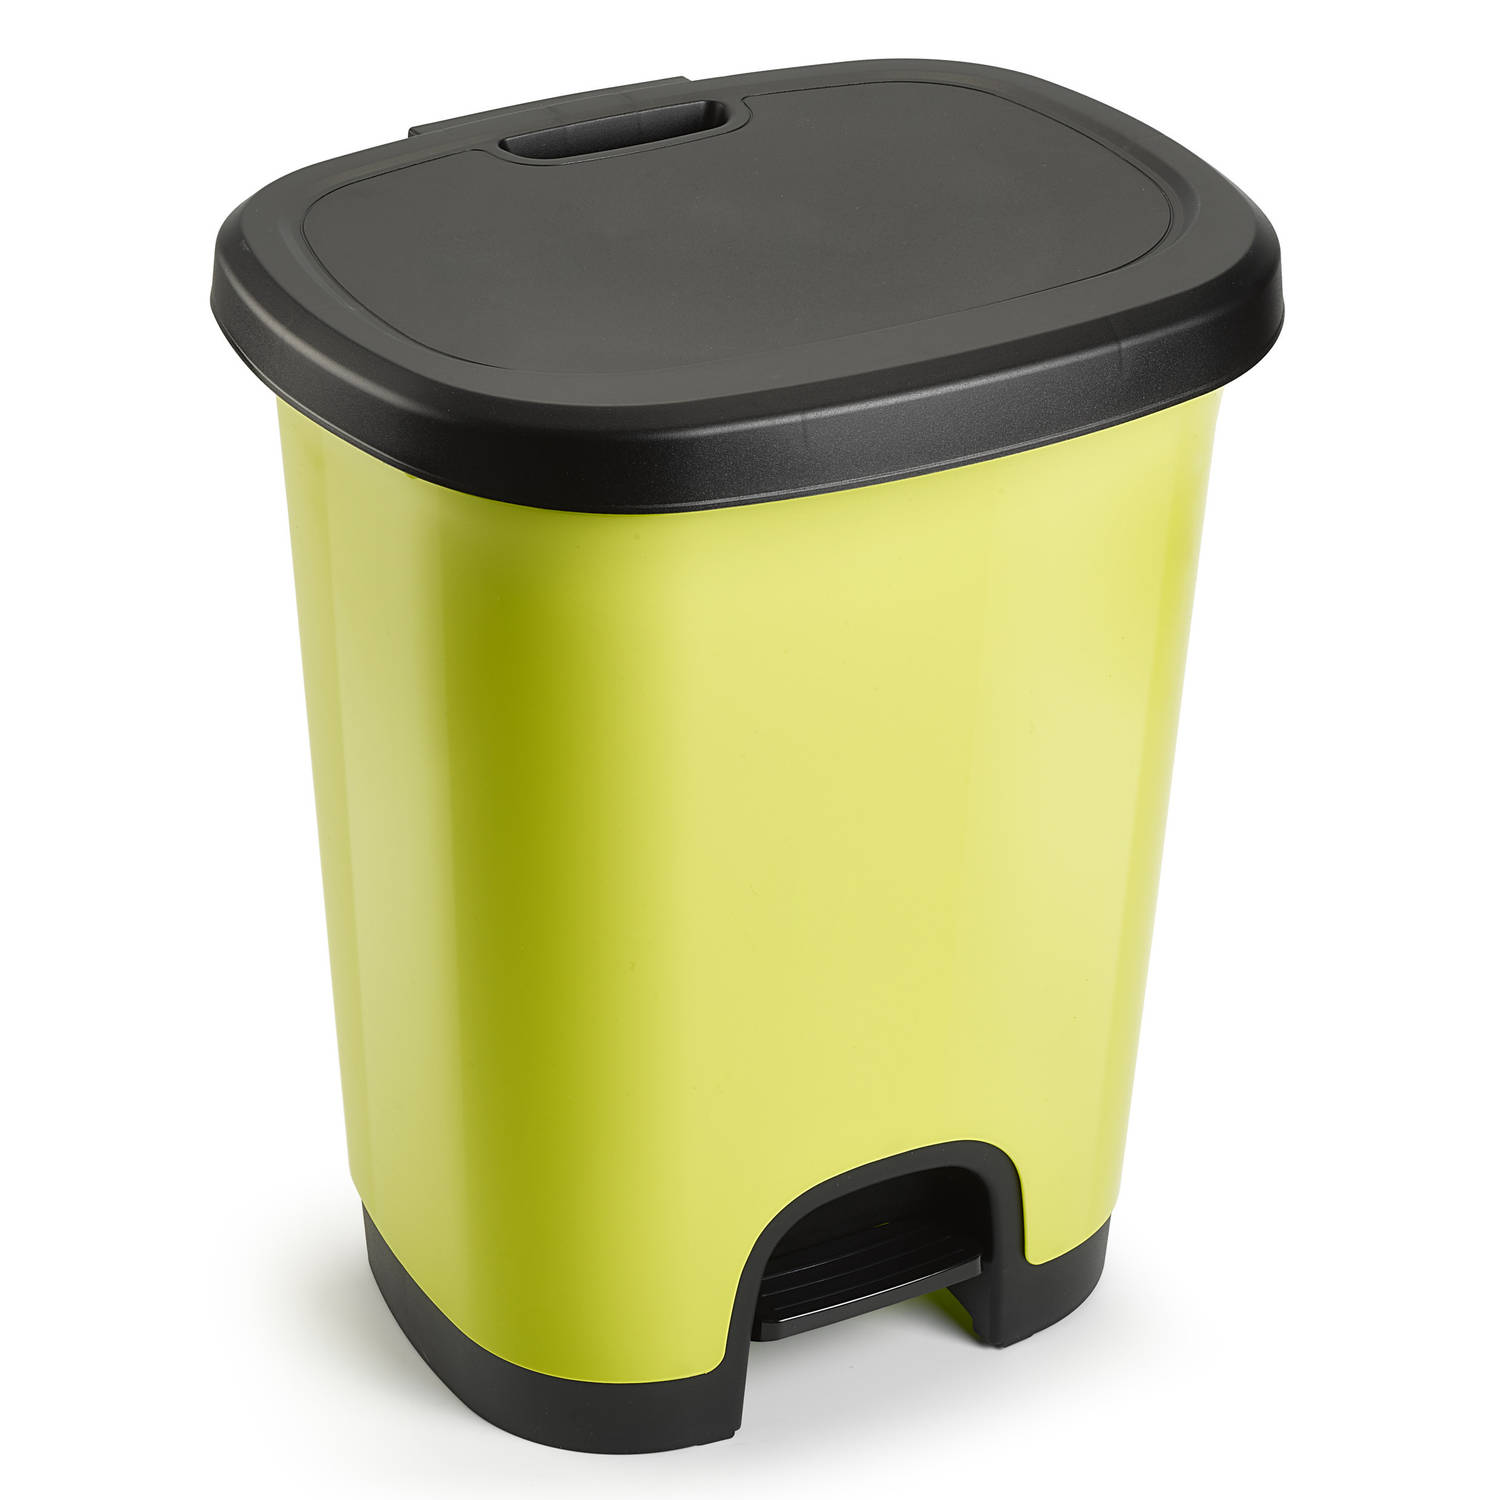 Afvalemmer/vuilnisemmer/pedaalemmer 18 liter in het kiwi groen/zwart met deksel en pedaal - Pedaalemmers